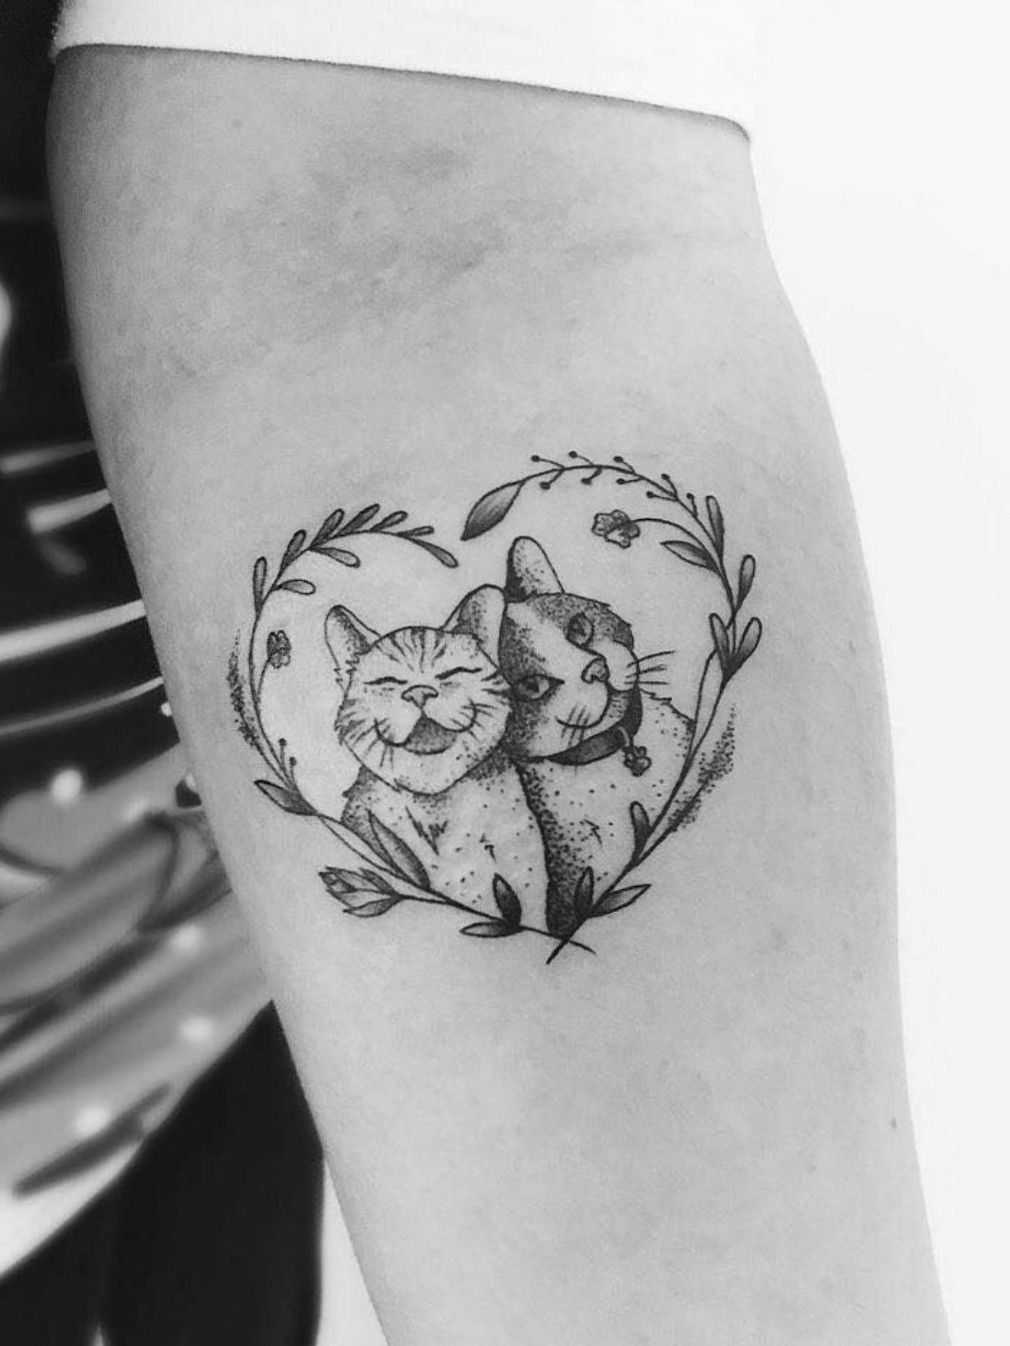 cat high five tattoo